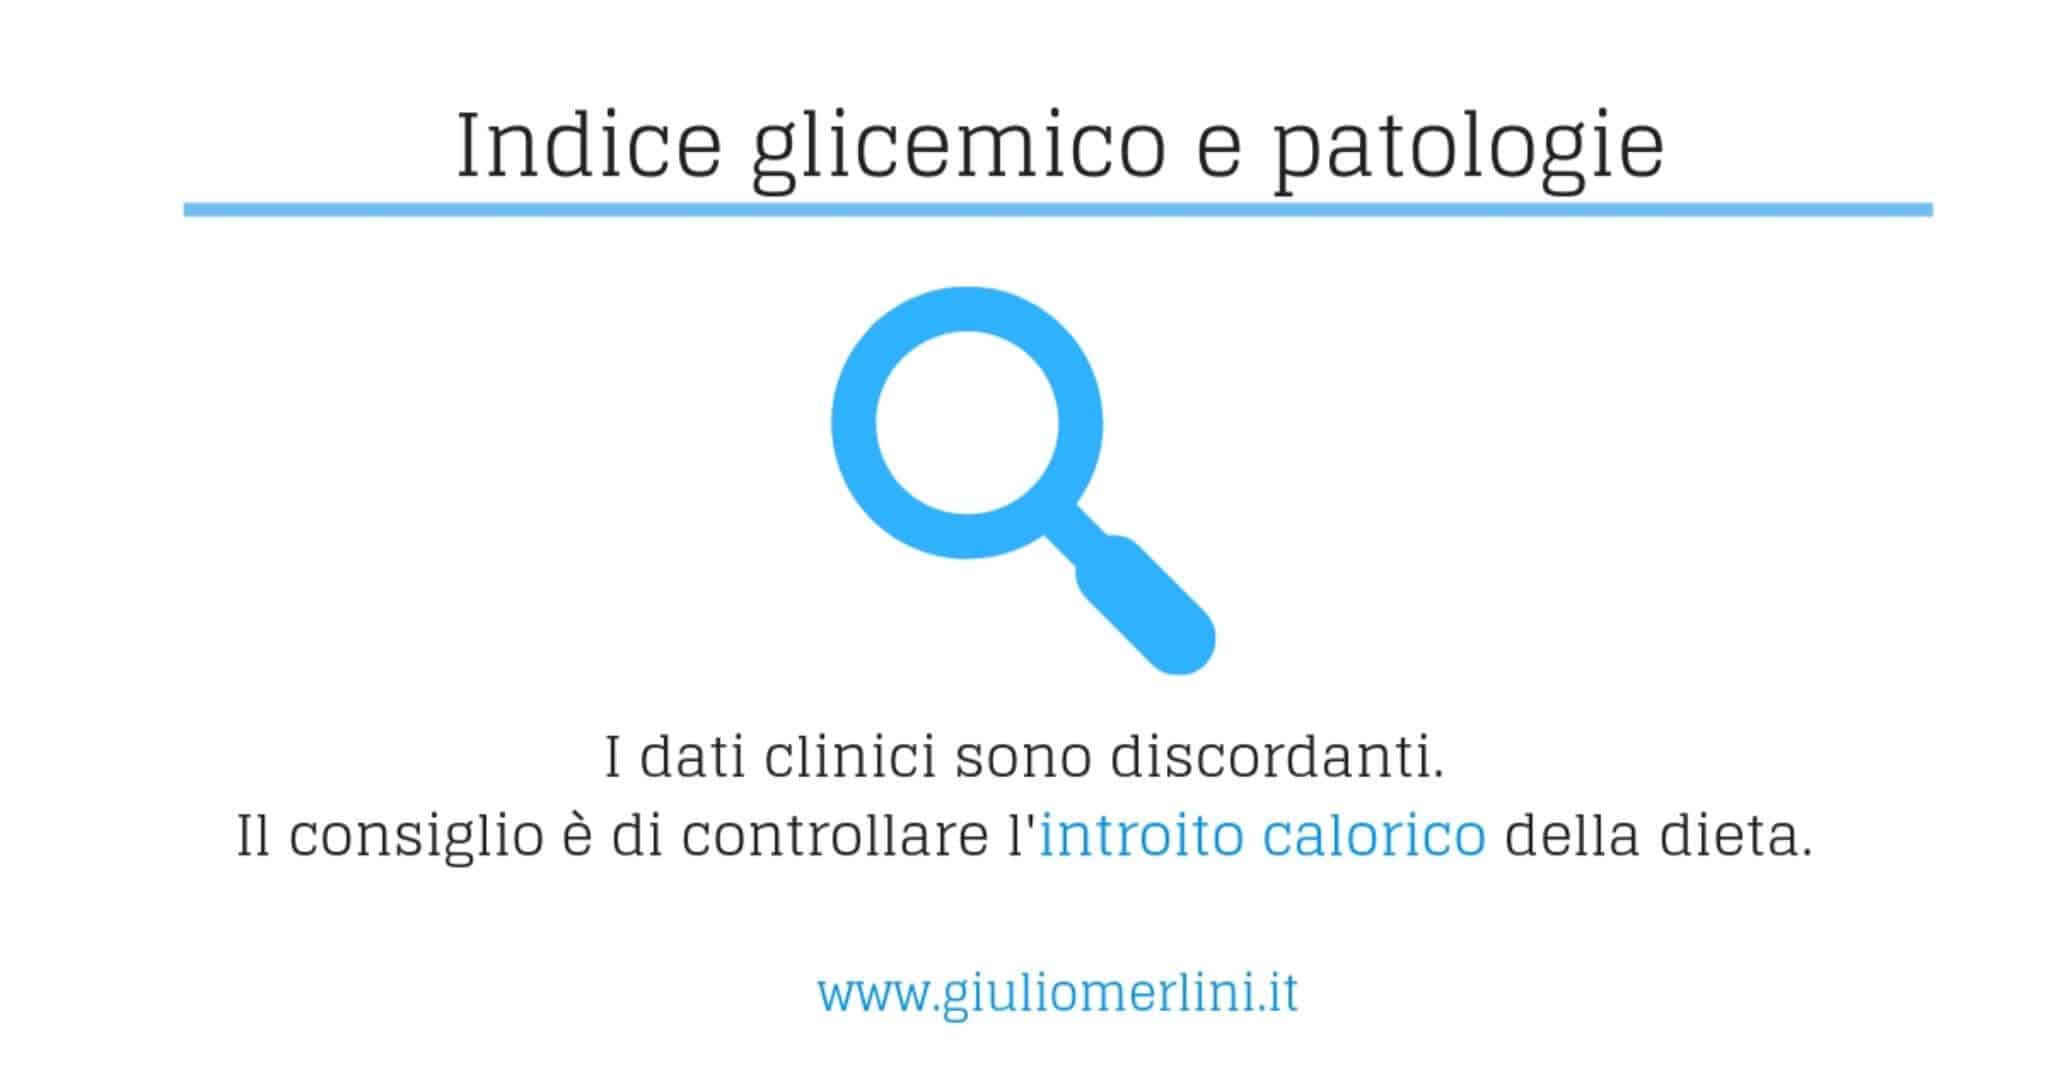 indice glicemico e patologie